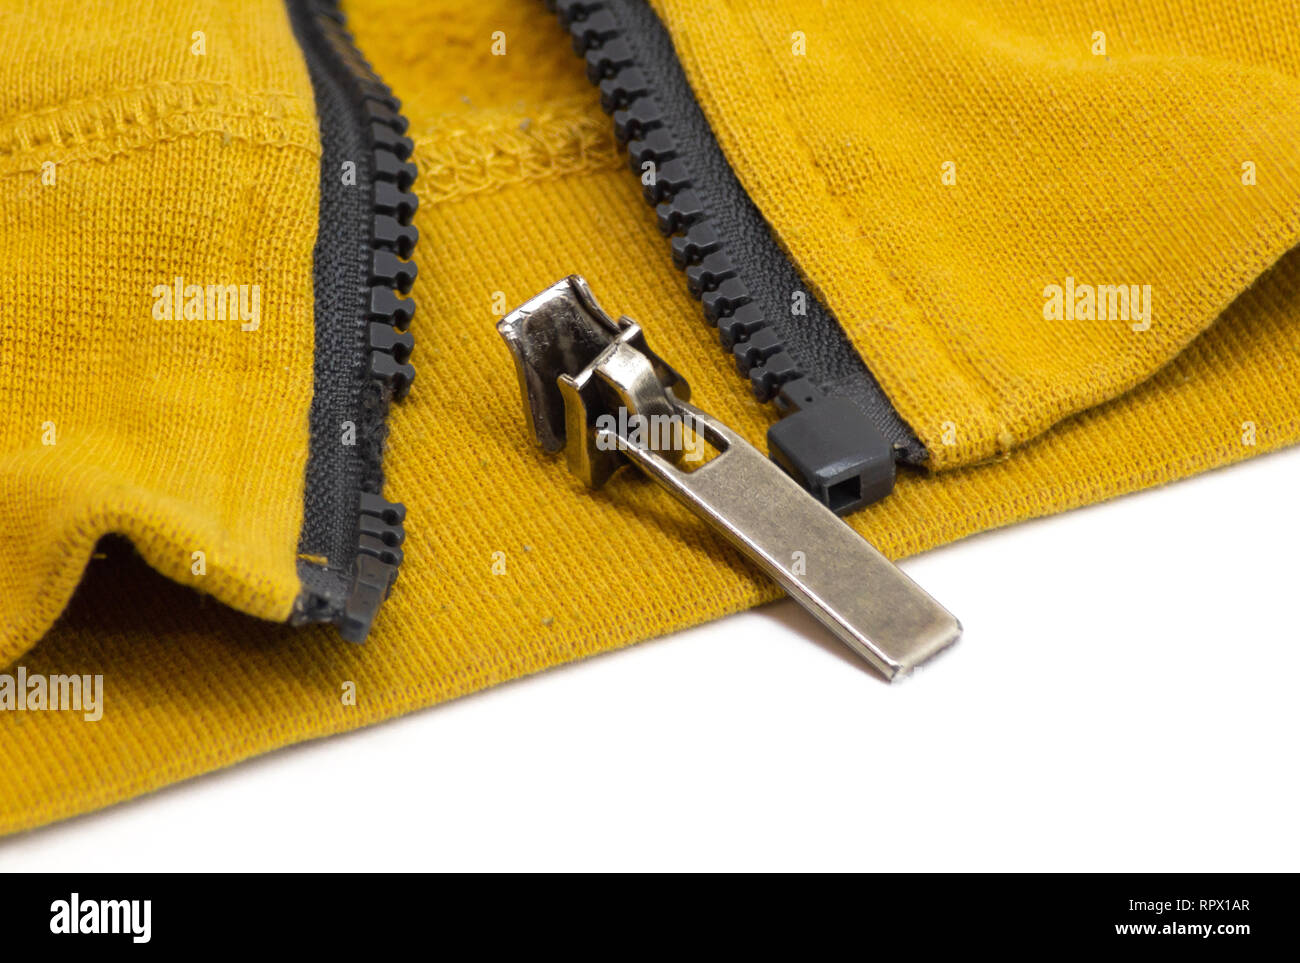 Defekten Reißverschluss in gelb, der Farbe des Senf shirt Jacke. Schließen  Detail-Foto Stockfotografie - Alamy